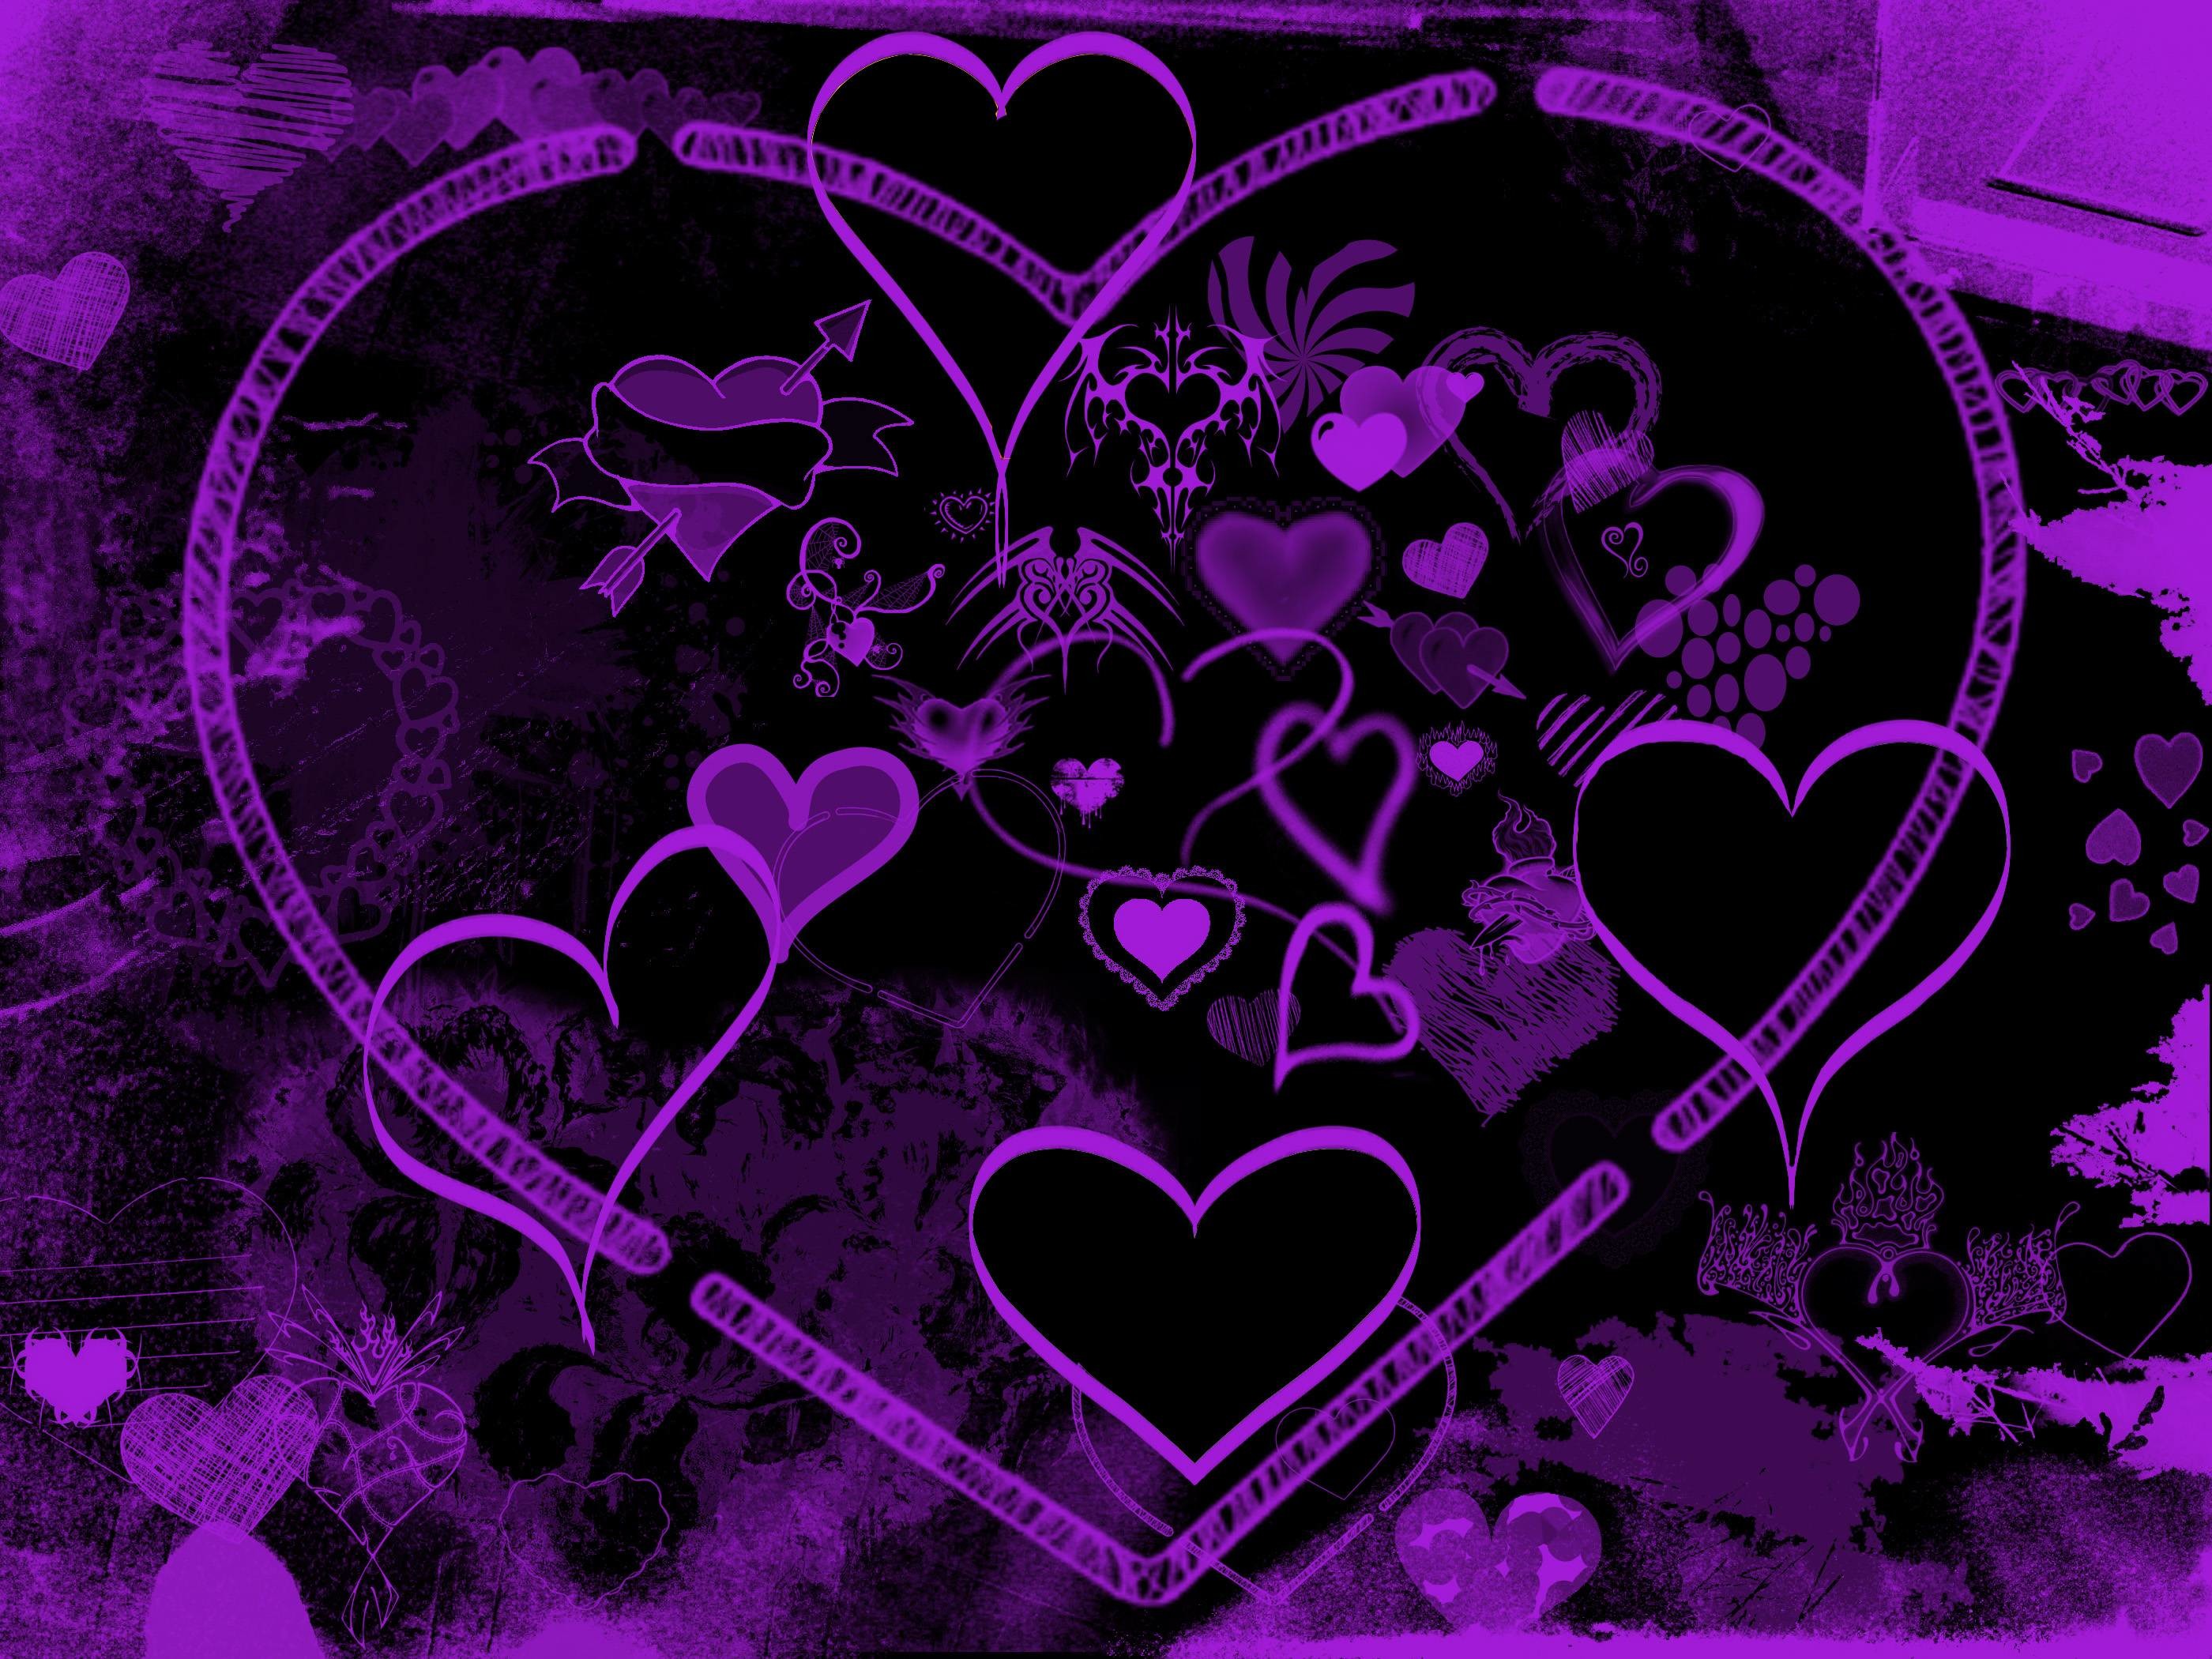 Purple Heart Background: Sự kết hợp của gam màu tím với hình nền trái tim đầy tình yêu sẽ khiến bạn không thể rời mắt khỏi bức ảnh này. Hãy thưởng thức những khoảnh khắc lãng mạn với hình nền đầy cảm hứng này.